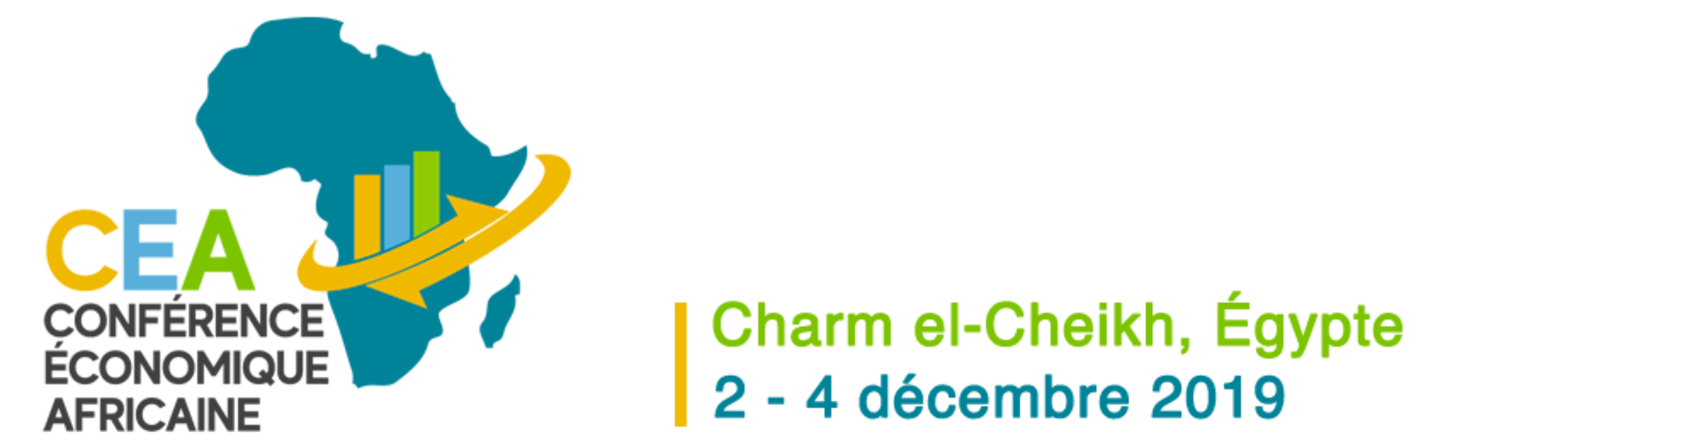 Conférence économique africaine 2019 : La 14ème édition prévue du 2 au 4 décembre à Charm El-Cheikh